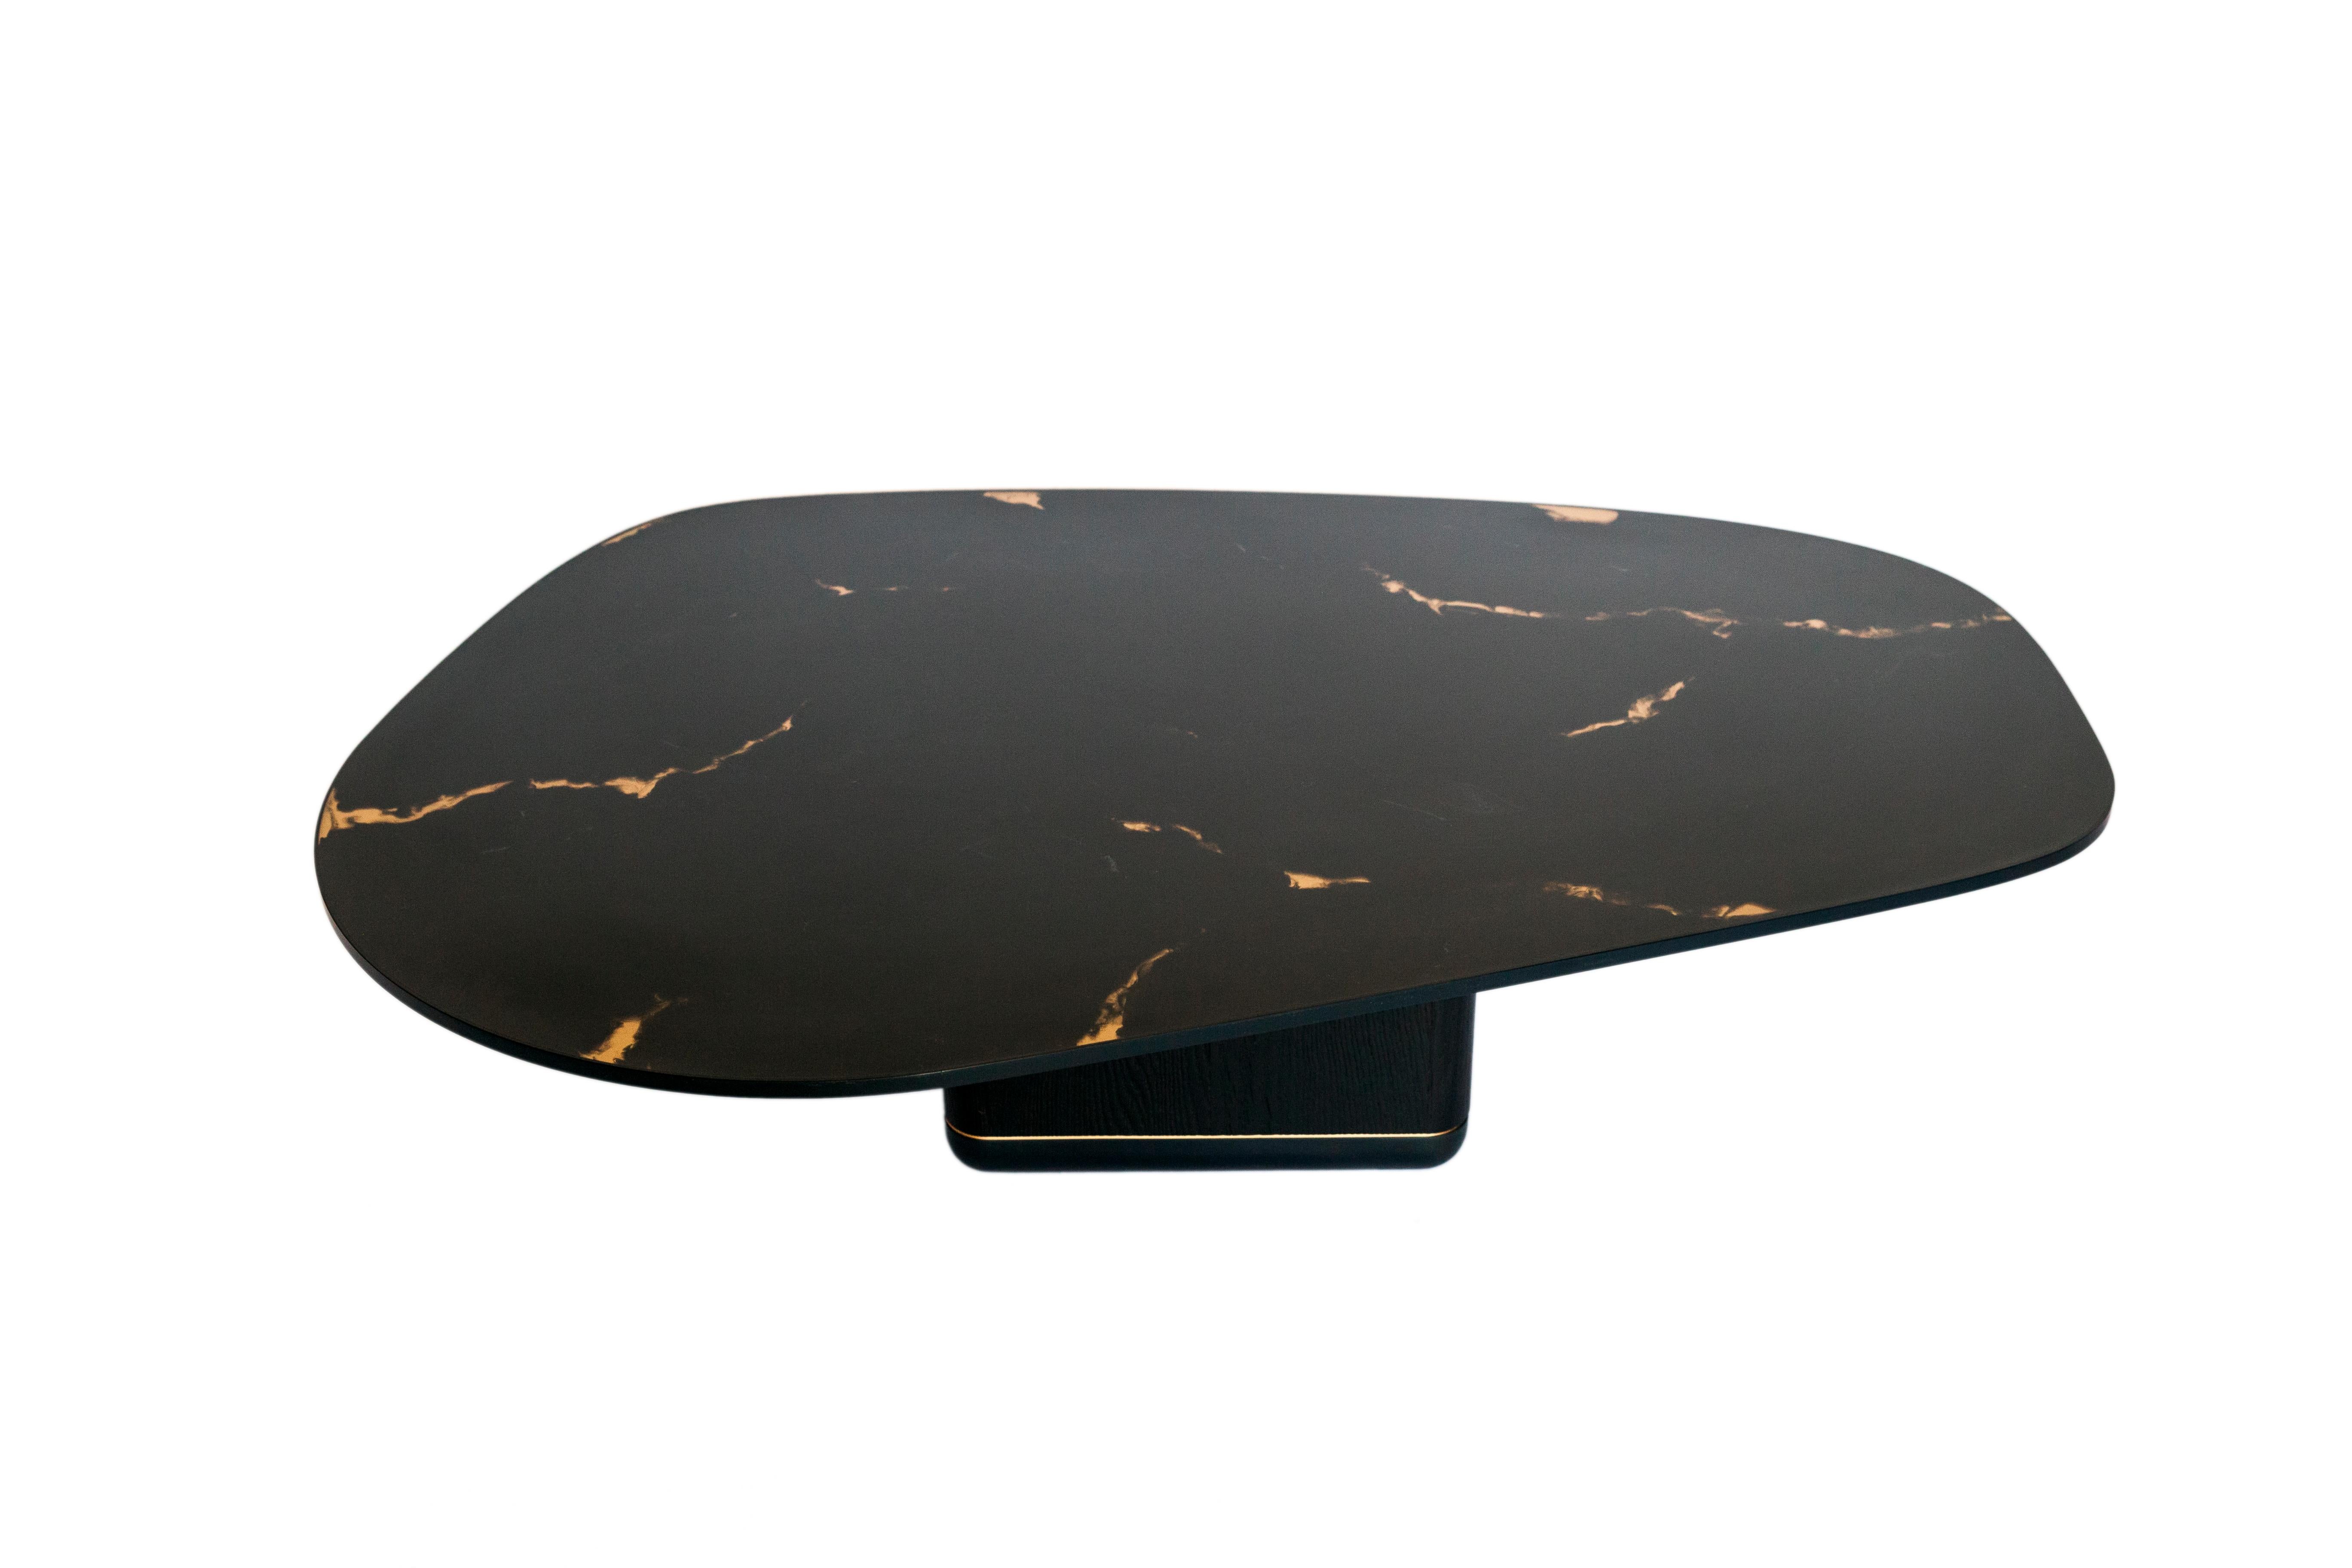 L'élégante et saisissante table basse en jaspe incurvé est dotée d'une base en chêne noir carbonisé avec des bandes en acier noirci et en bronze, et d'un plateau en résine en bronze rose marbré noir avec des bandes en acier noirci.

Dimensions comme